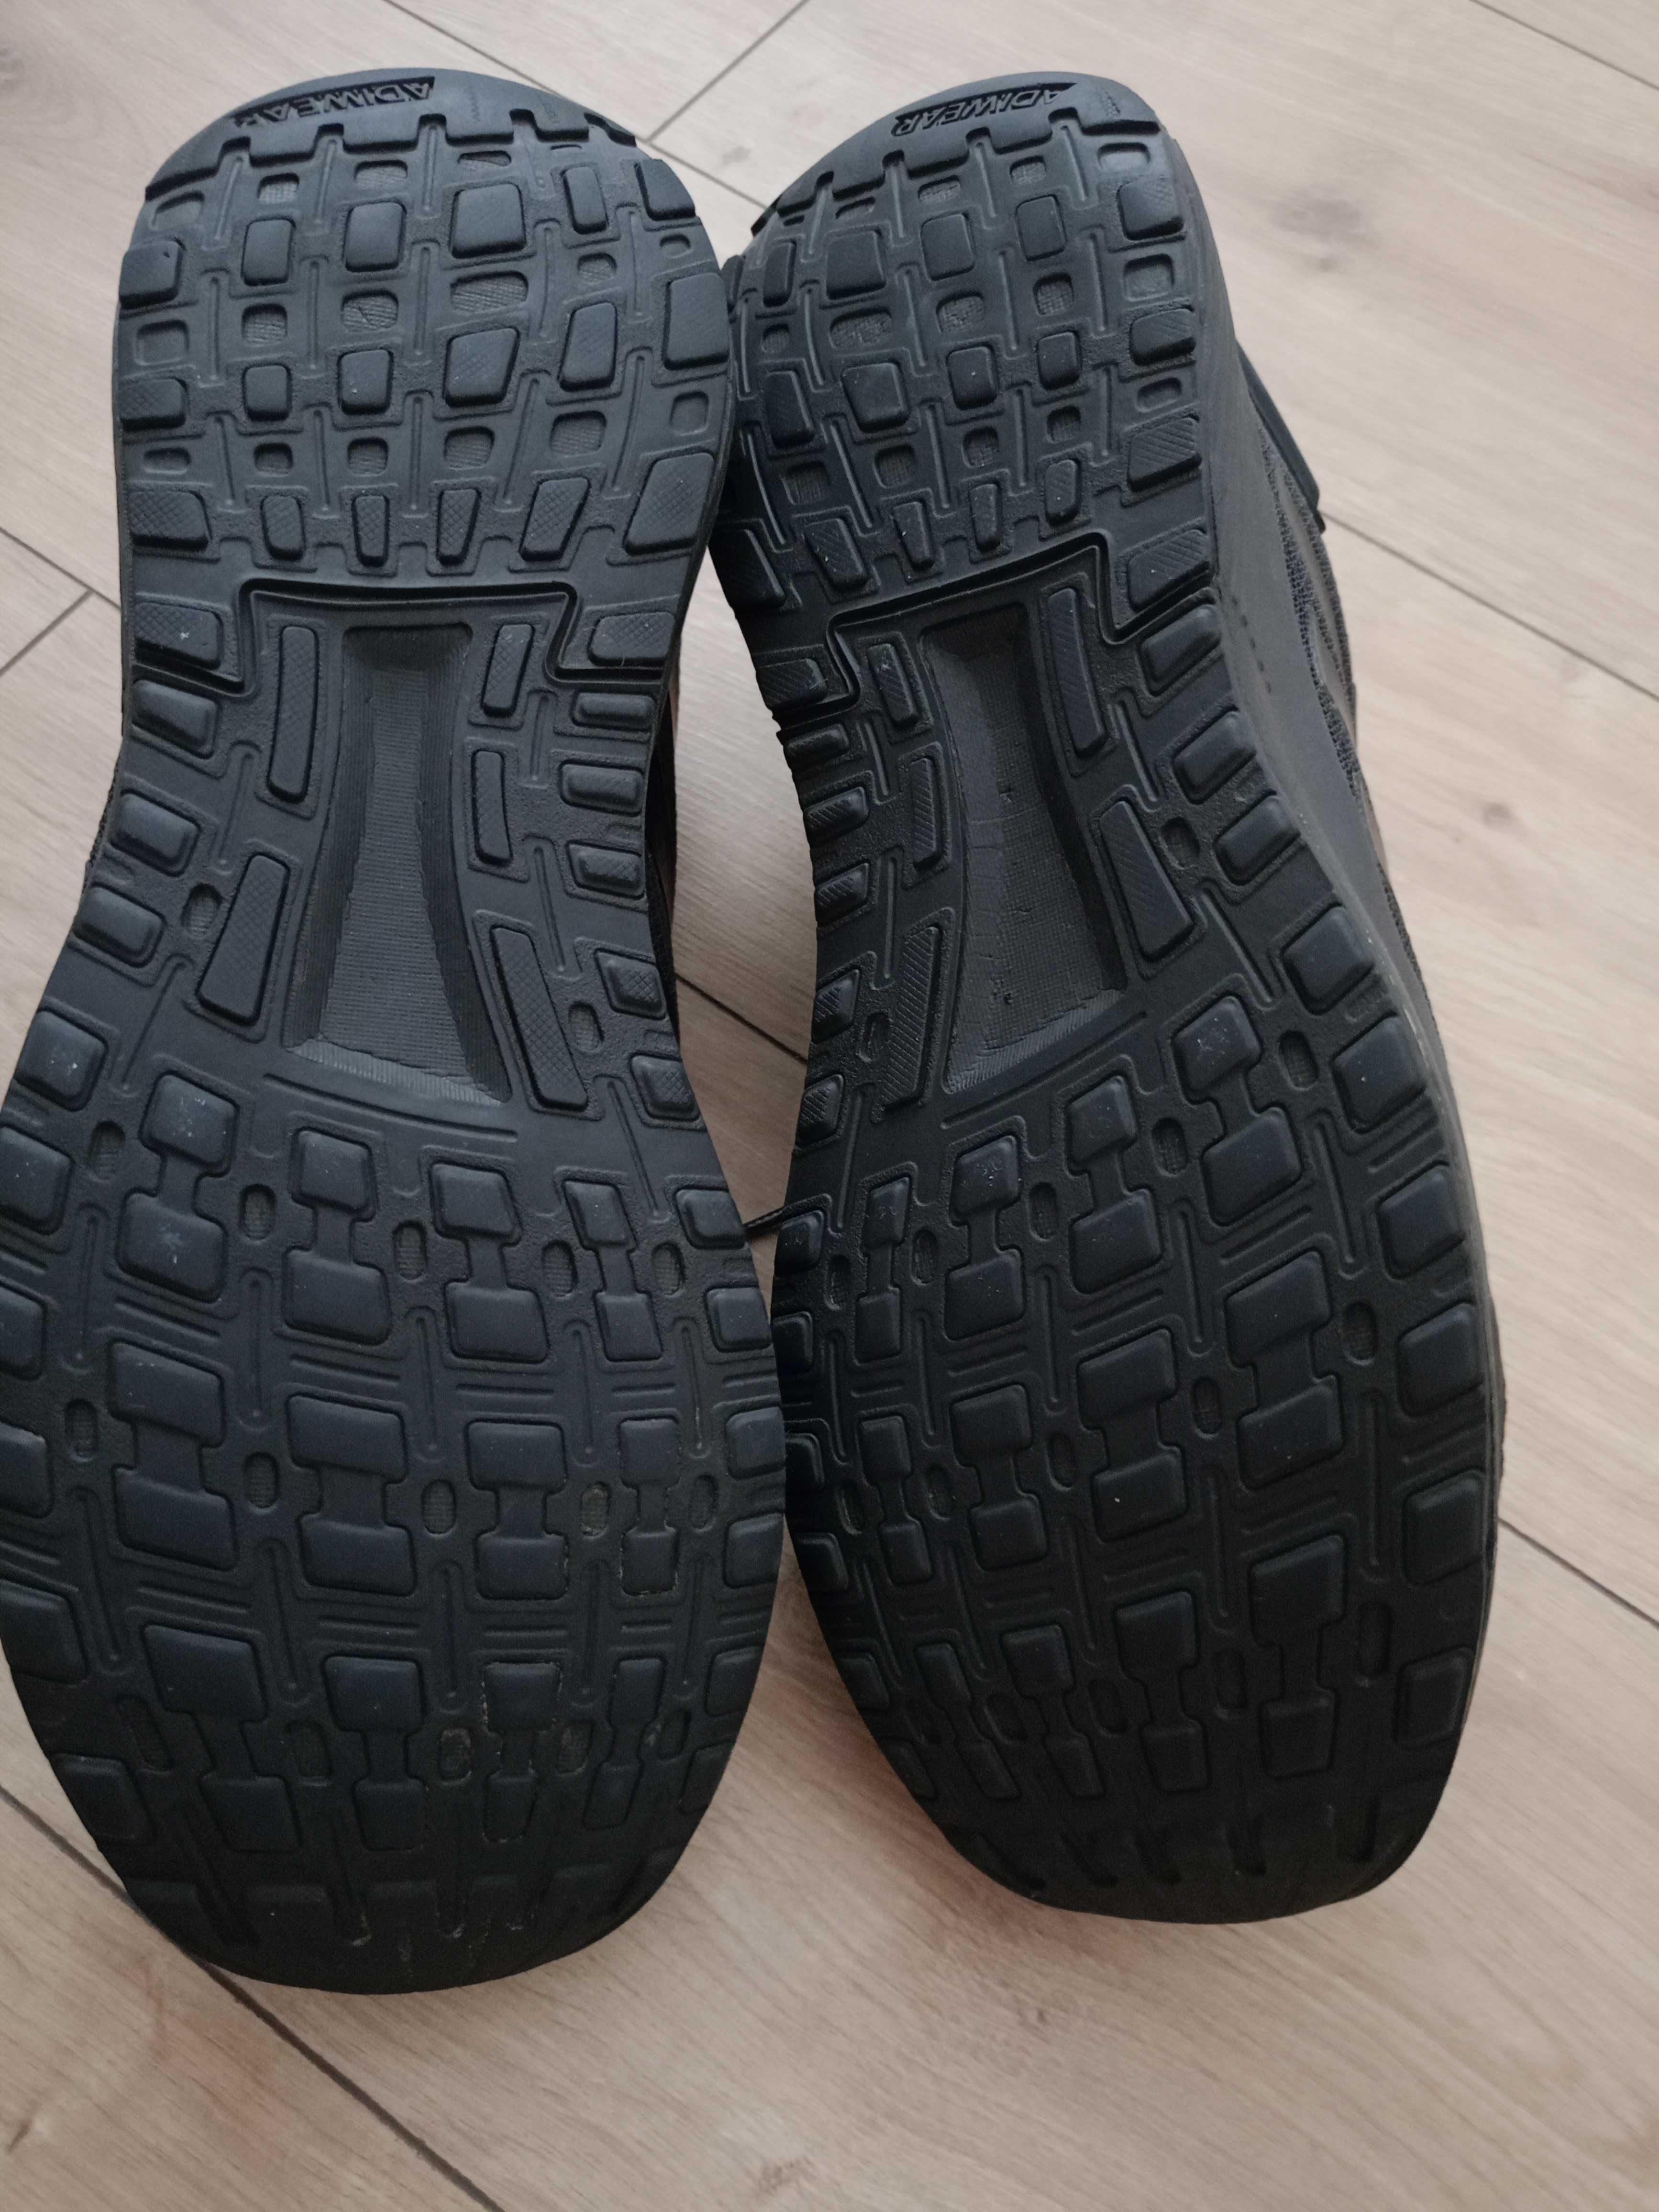 Czarne buty Adidas r. 46 2/3 długość wkładki wew. 29 cm